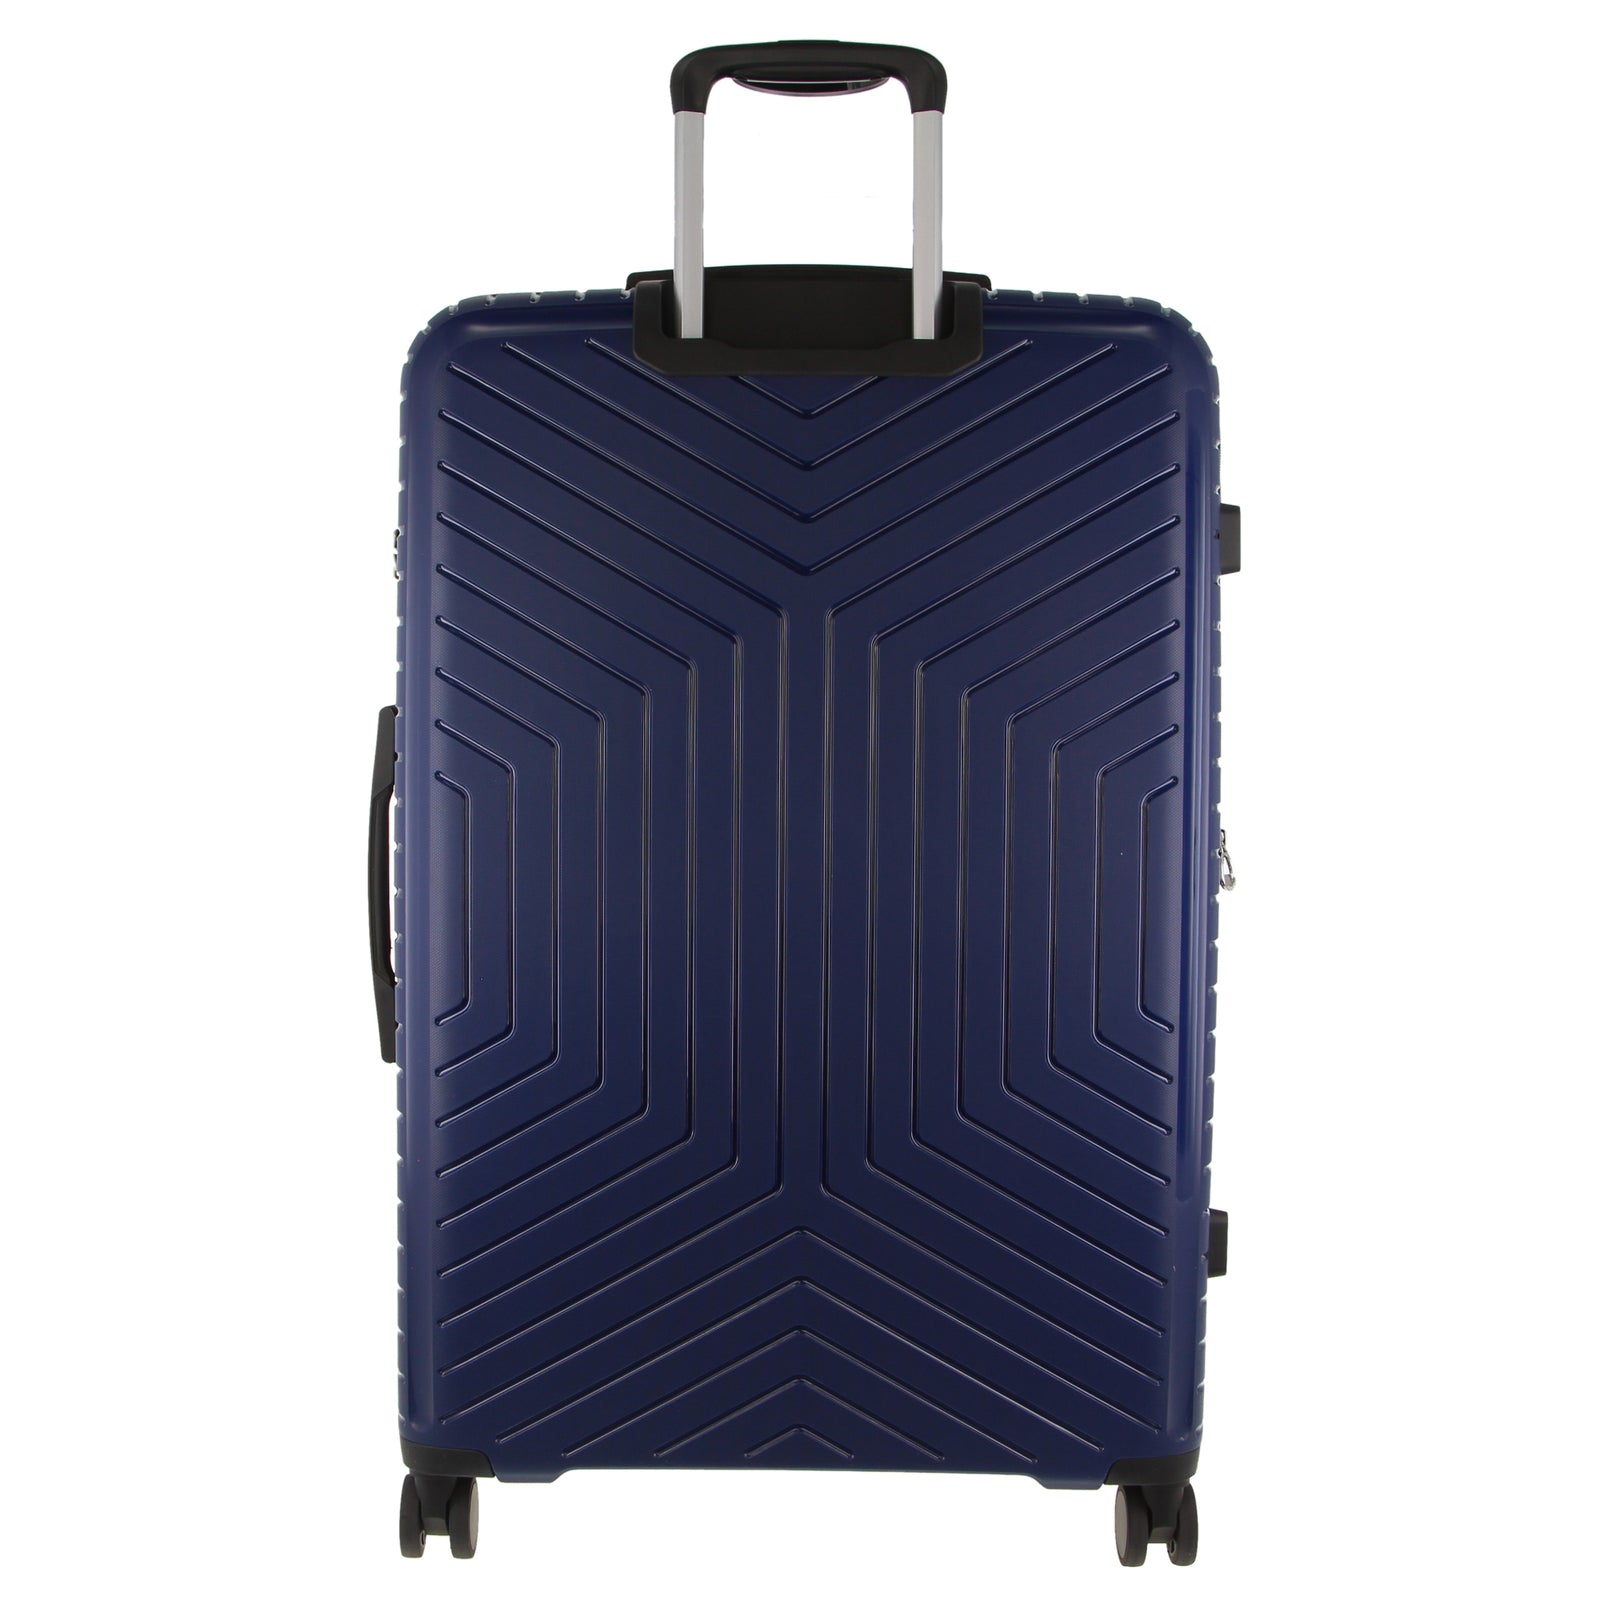 65cm Medium Hard-Shell Suitcase Travel Luggage Bag - Navy